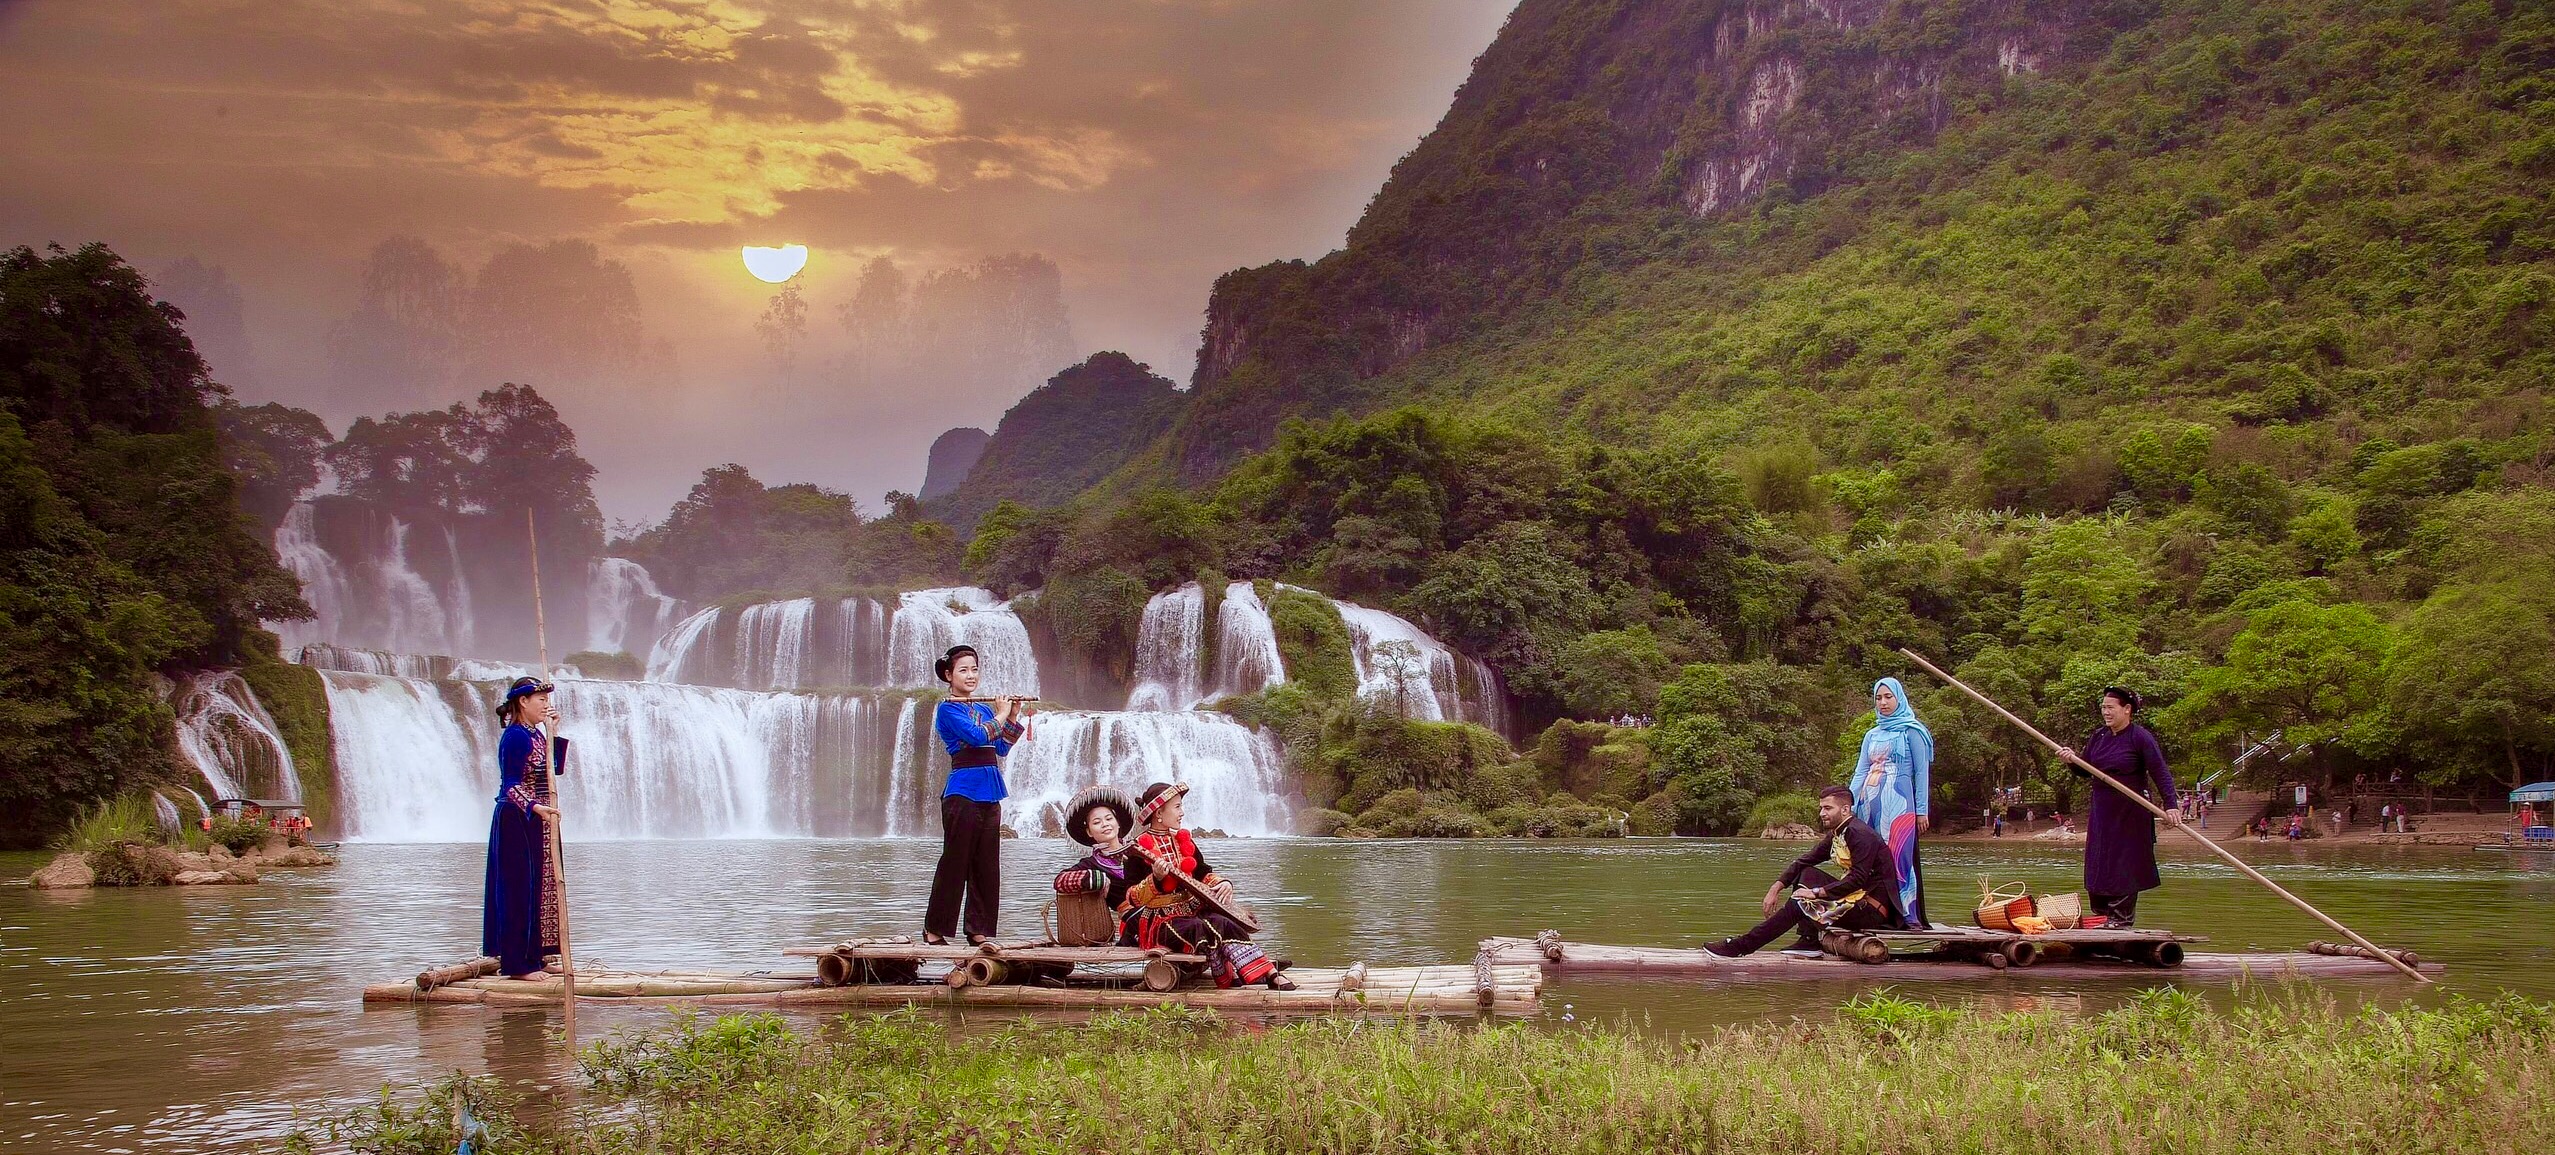 Bản Giốc - huyền thoại chưa kể về đệ nhất danh thác Việt Nam